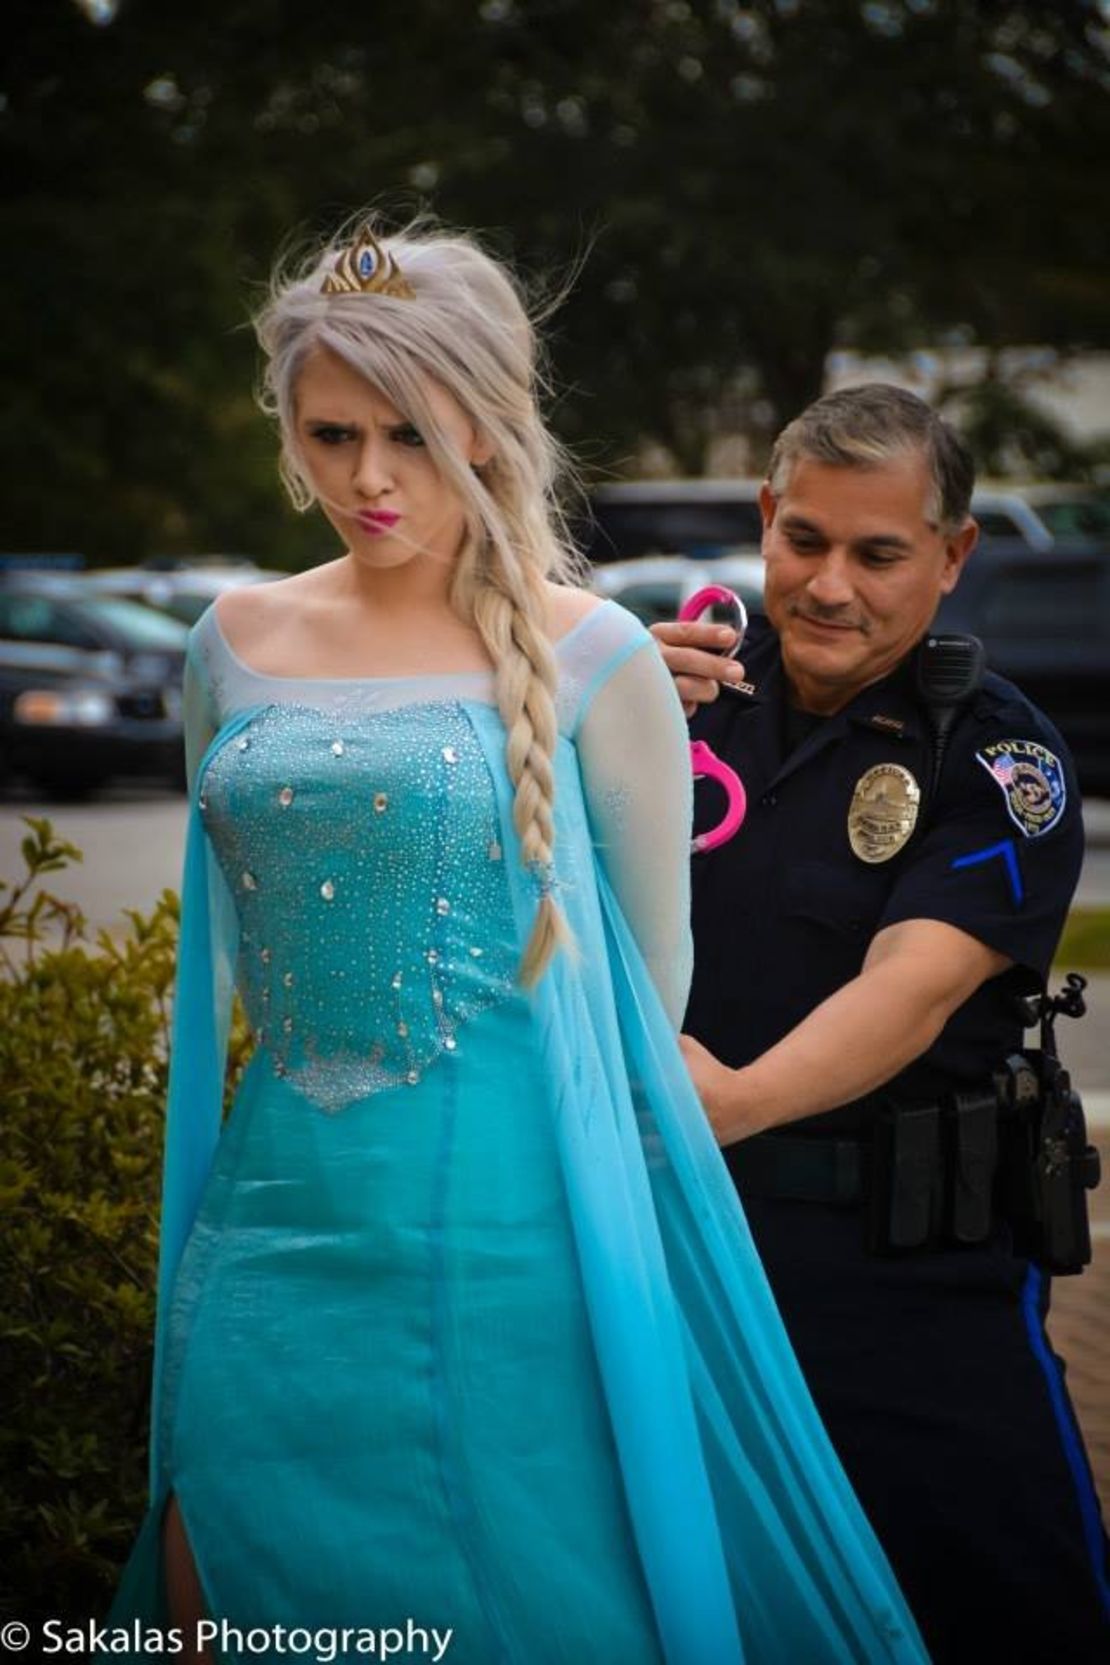 "Elsa" arrested for cold weather